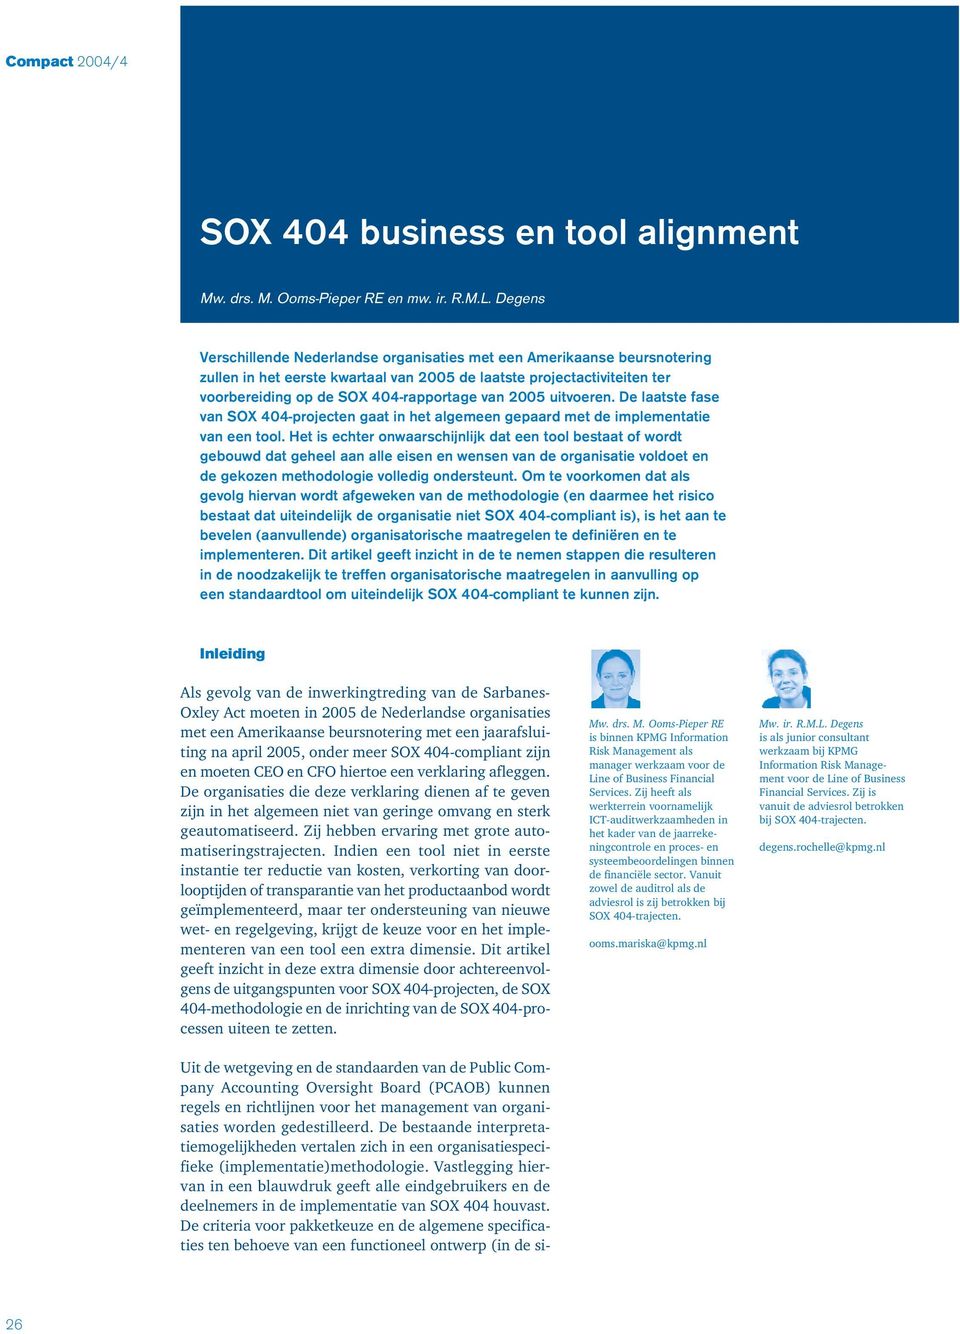 2005 uitvoeren. De laatste fase van SOX 404-projecten gaat in het algemeen gepaard met de implementatie van een tool.